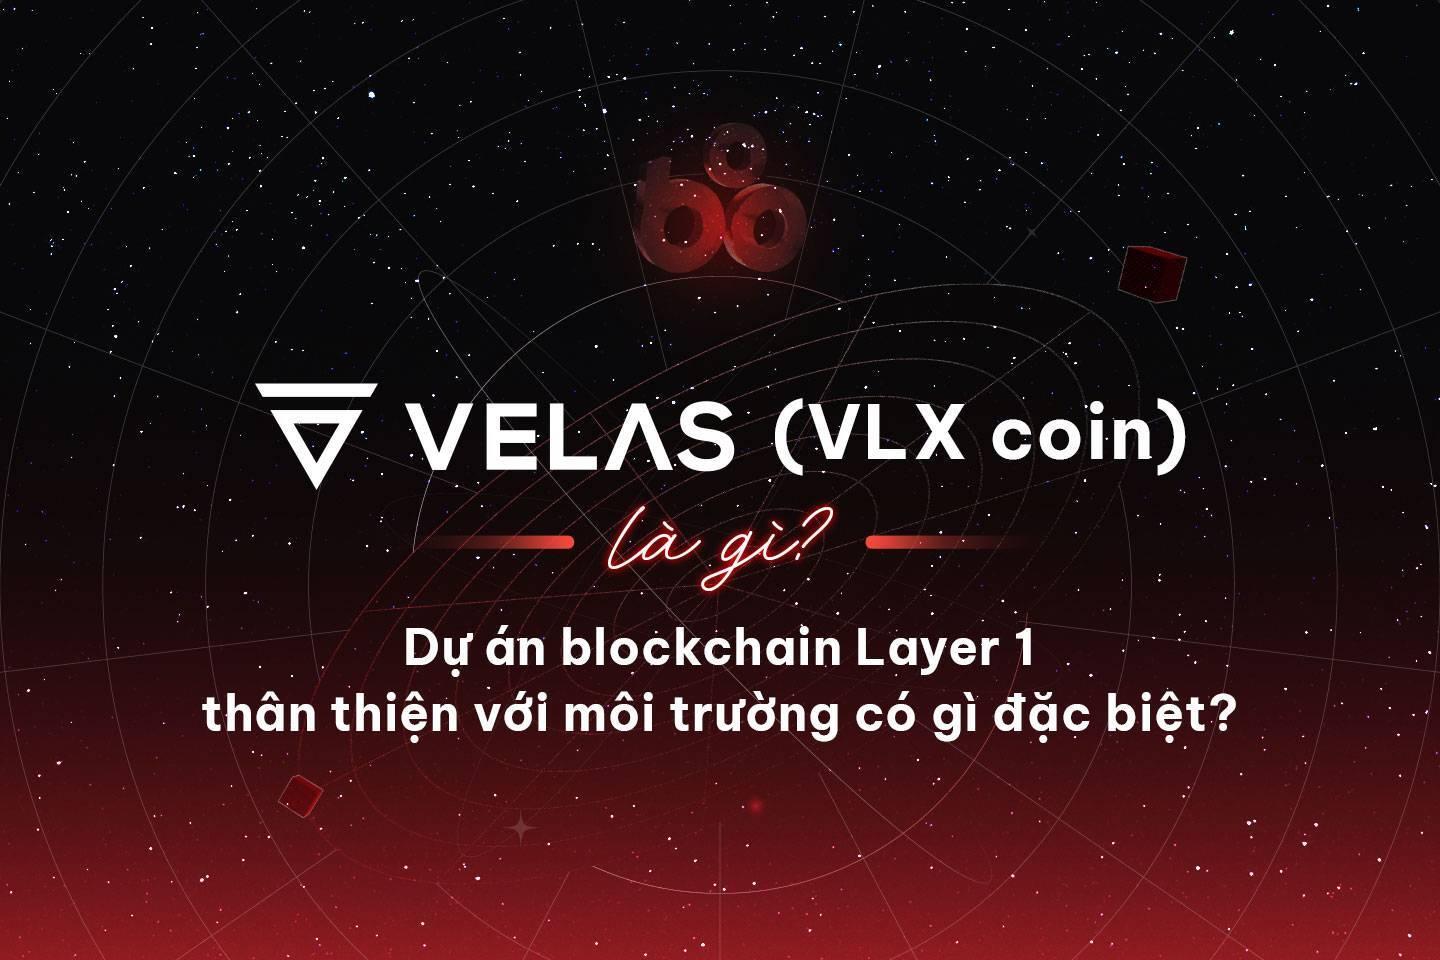 velas-vlx-coin-la-gi-du-an-blockchain-layer-1-than-thien-voi-moi-truong-co-gi-dac-biet